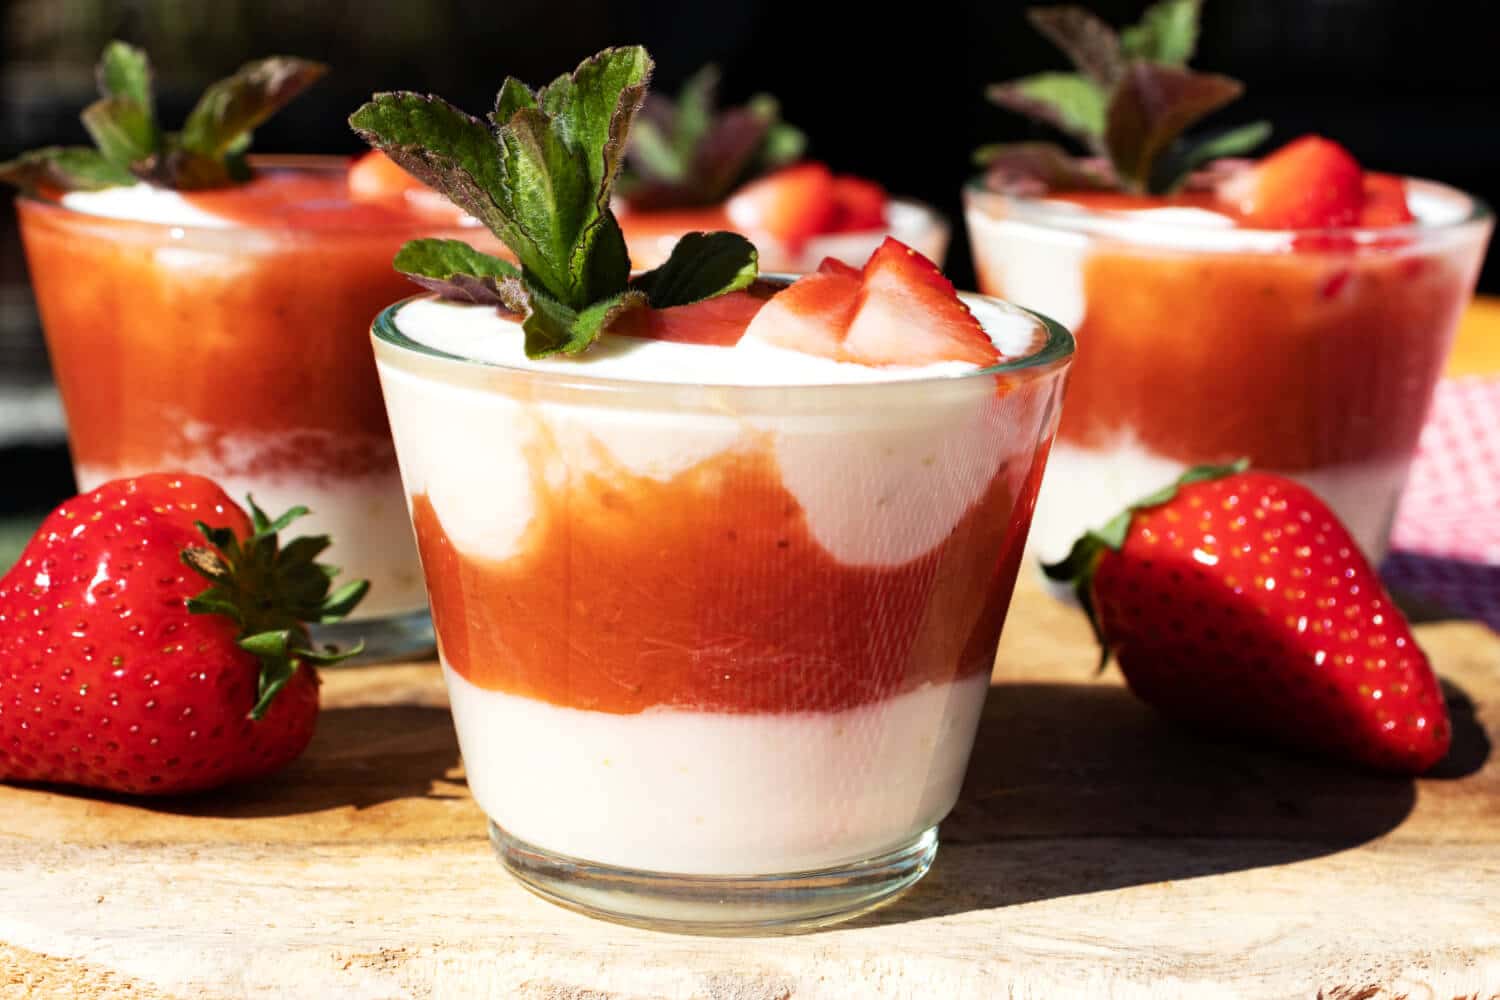 Erdbeer Rhabarber Joghurt Dessert Ohne Zucker Staupitopia Zuckerfrei